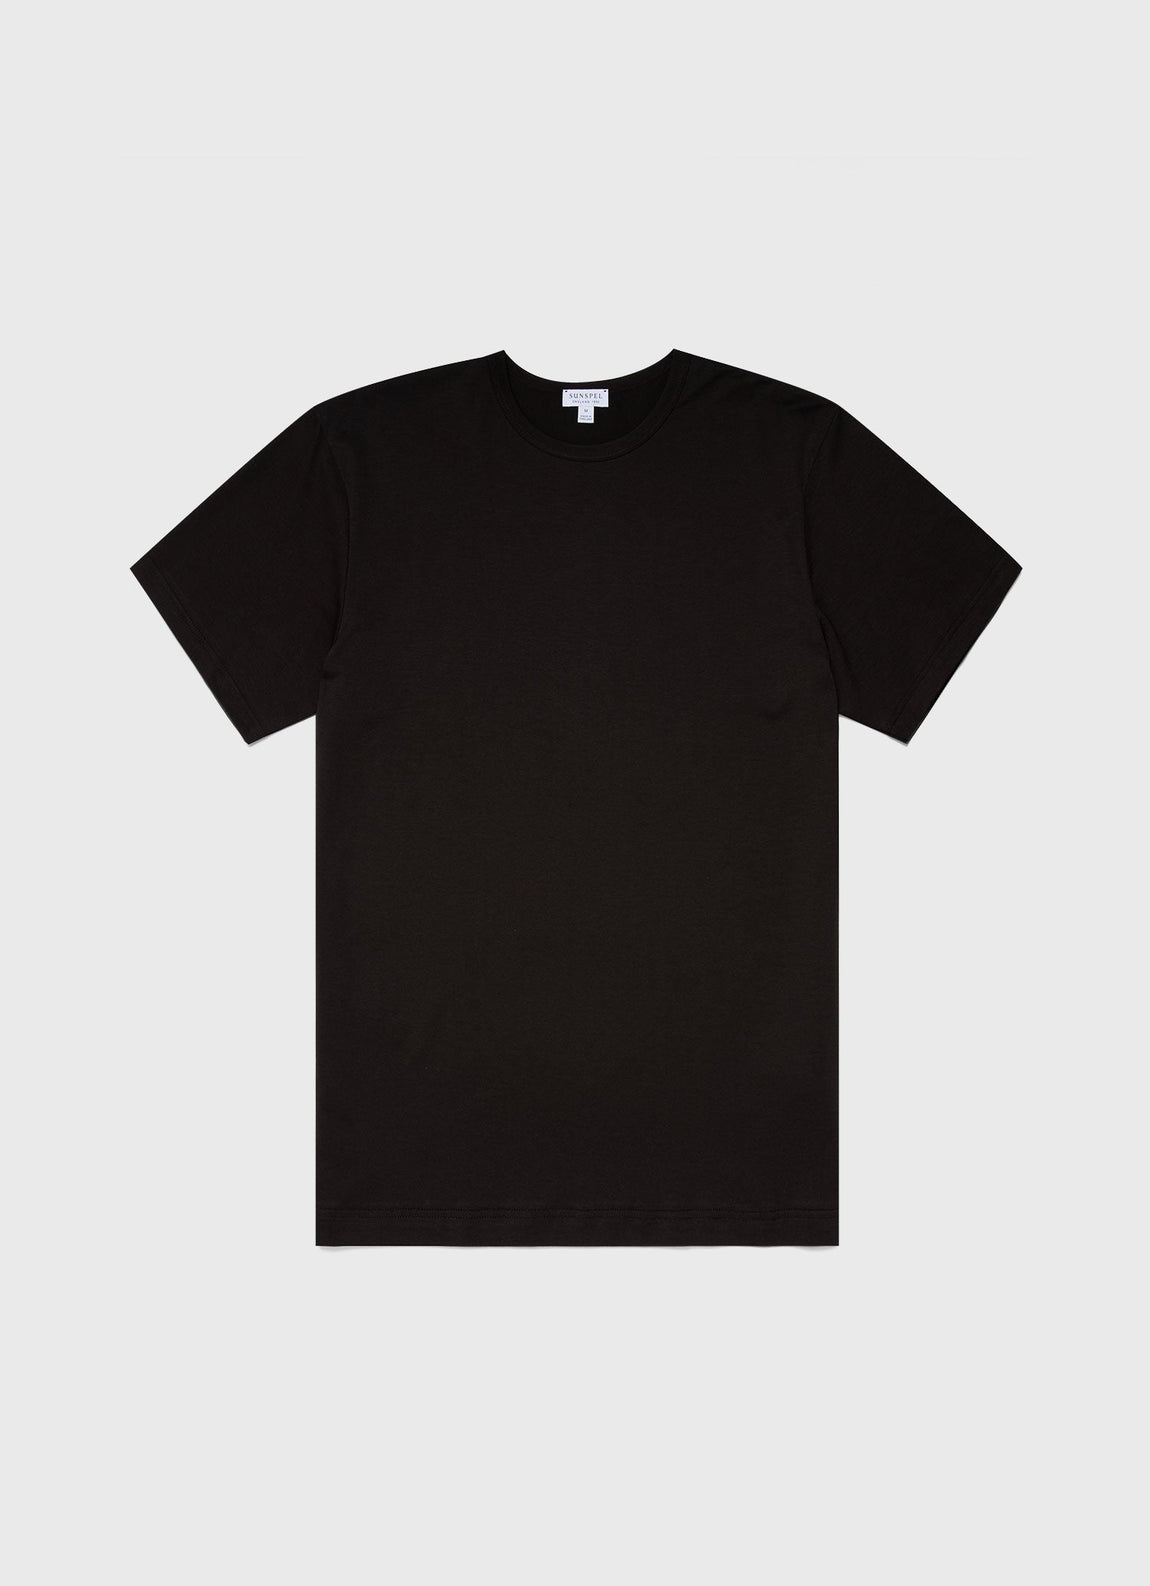 ASKET - Lightweight T-Shirt Black - Cotton - Mens